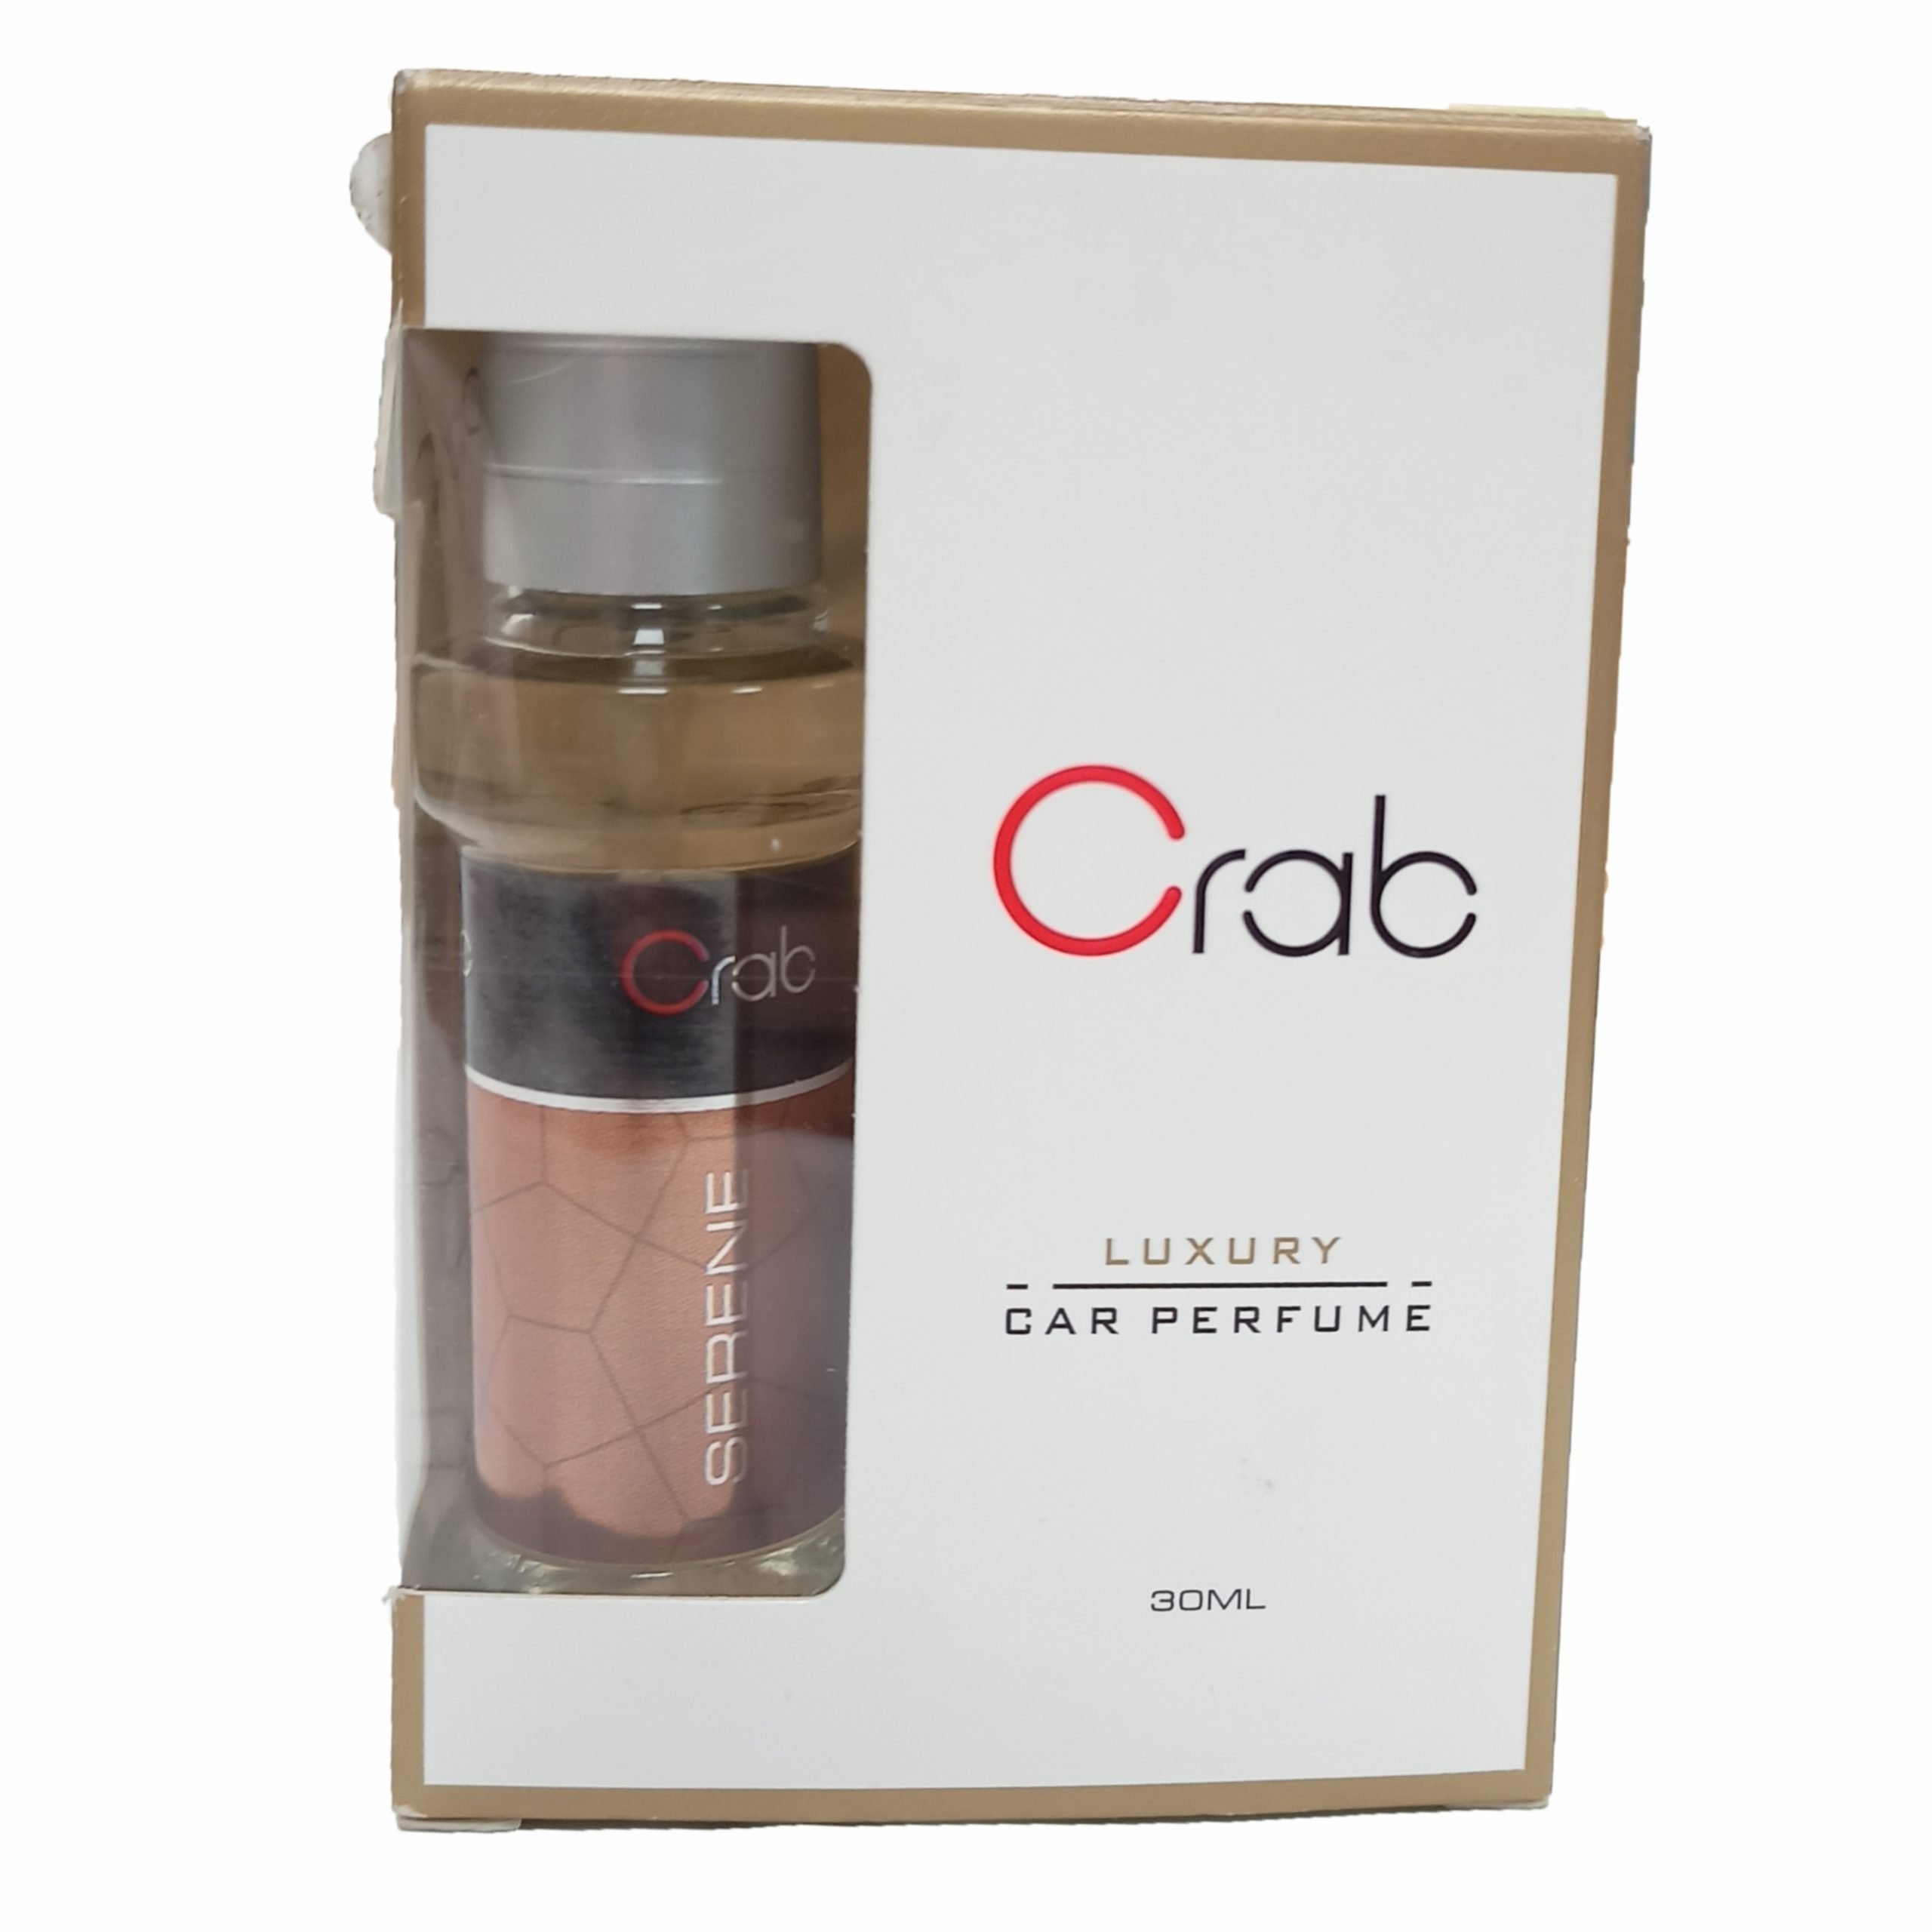 https://crabindia.com/wp-content/uploads/2021/07/Spray-perfume-Serene-scaled.jpg